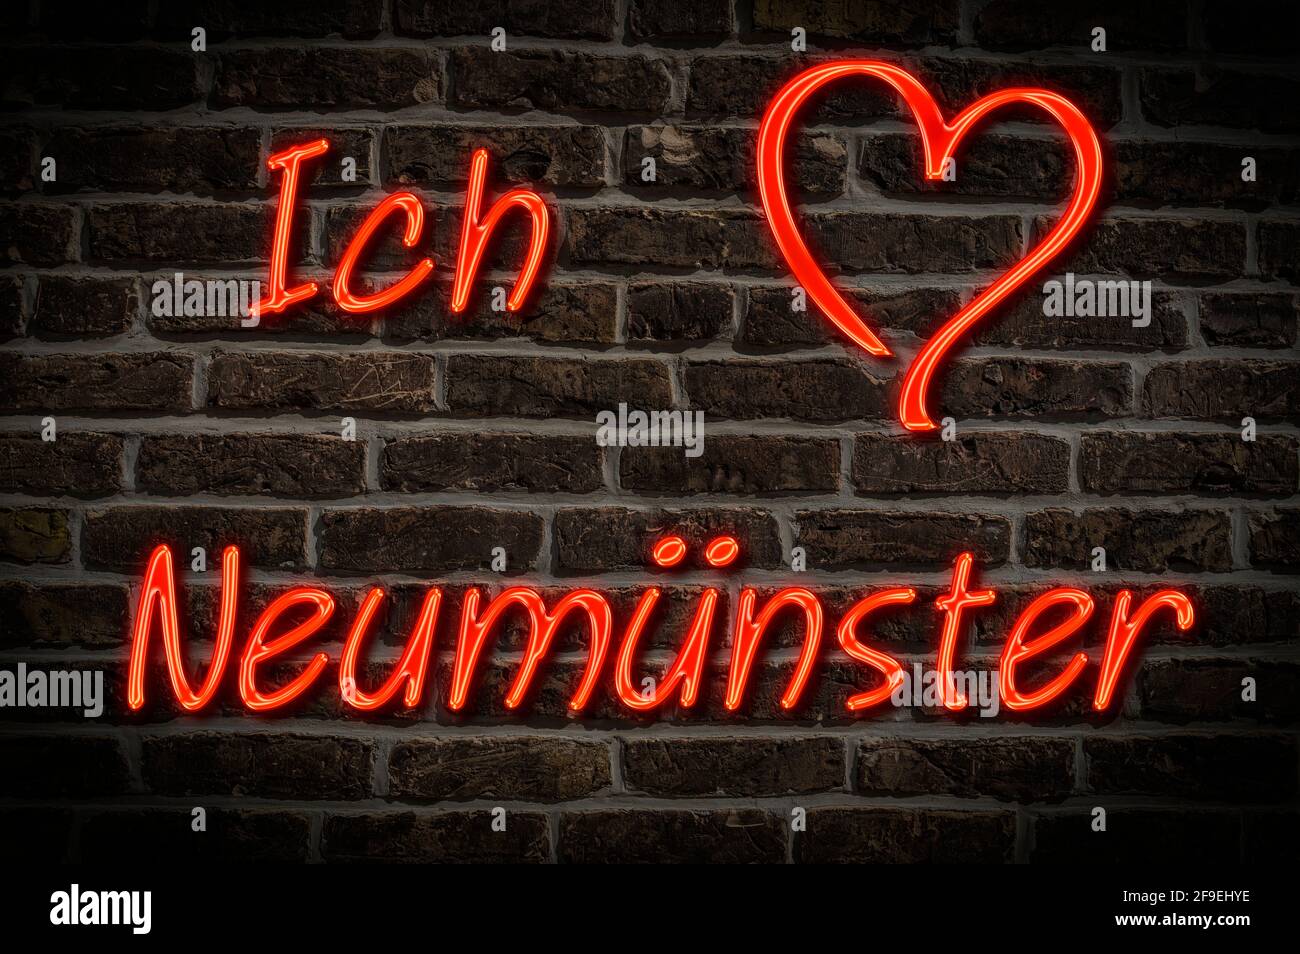 Leuchtreklame, Ich liebe Neumünster, Schleswig-Holstein, Deutschland, Europa | Illuminated advertising, I love Neumünster, Schleswig-Holstein, Germany Stock Photo